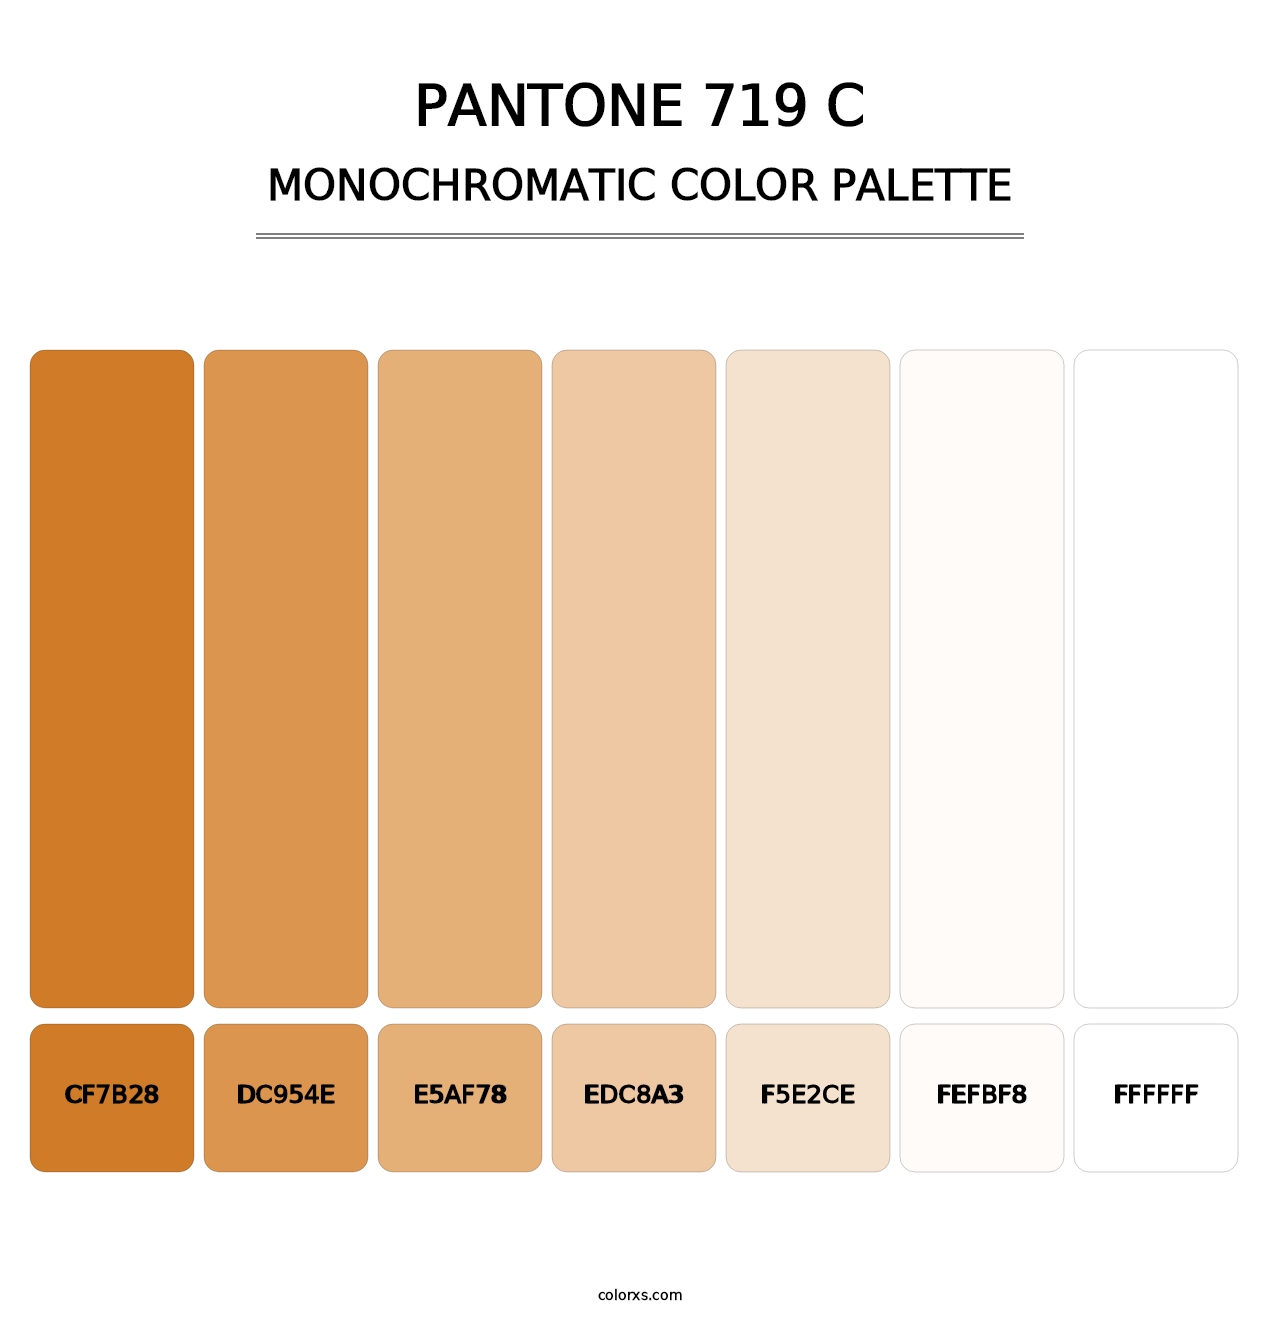 PANTONE 719 C - Monochromatic Color Palette